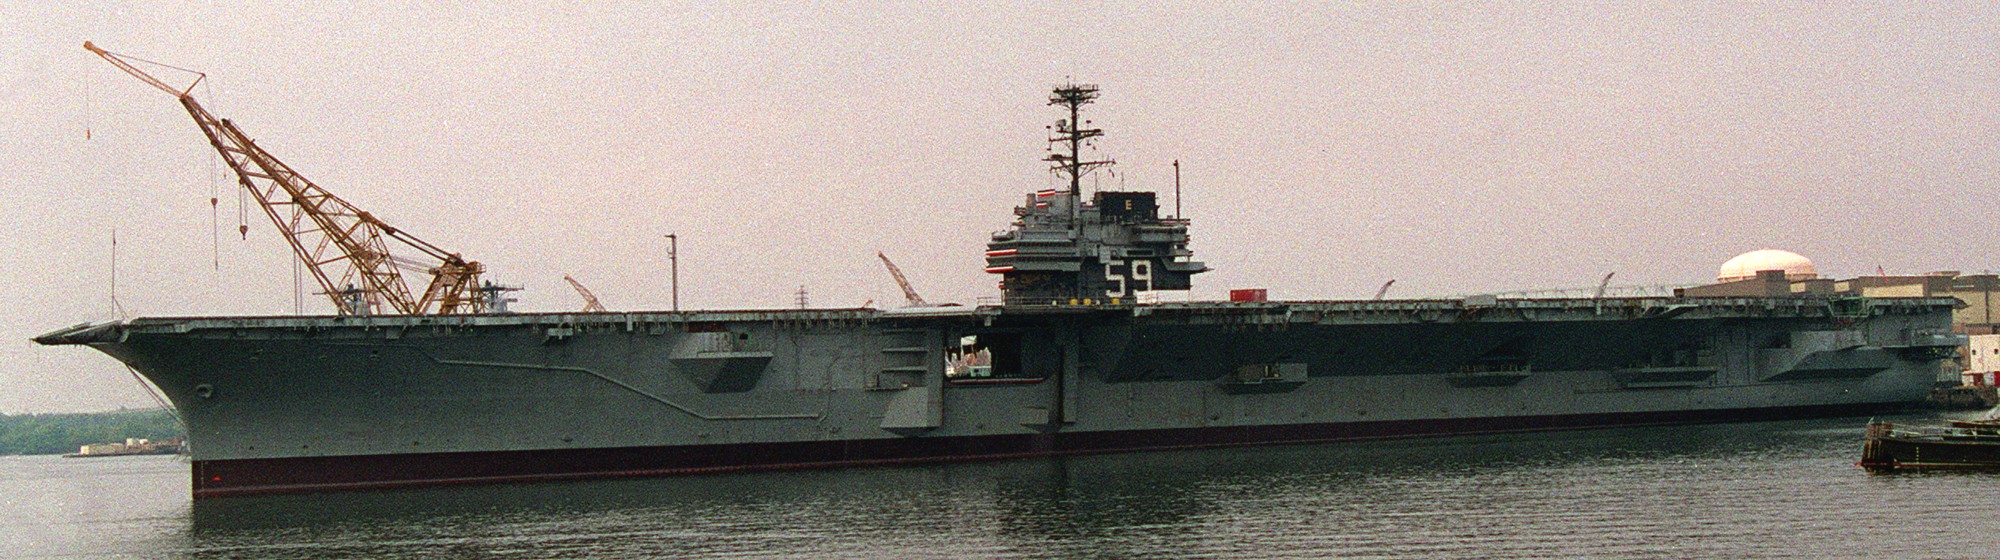 cv-59 uss forrestal aircraft carrier us navy 109